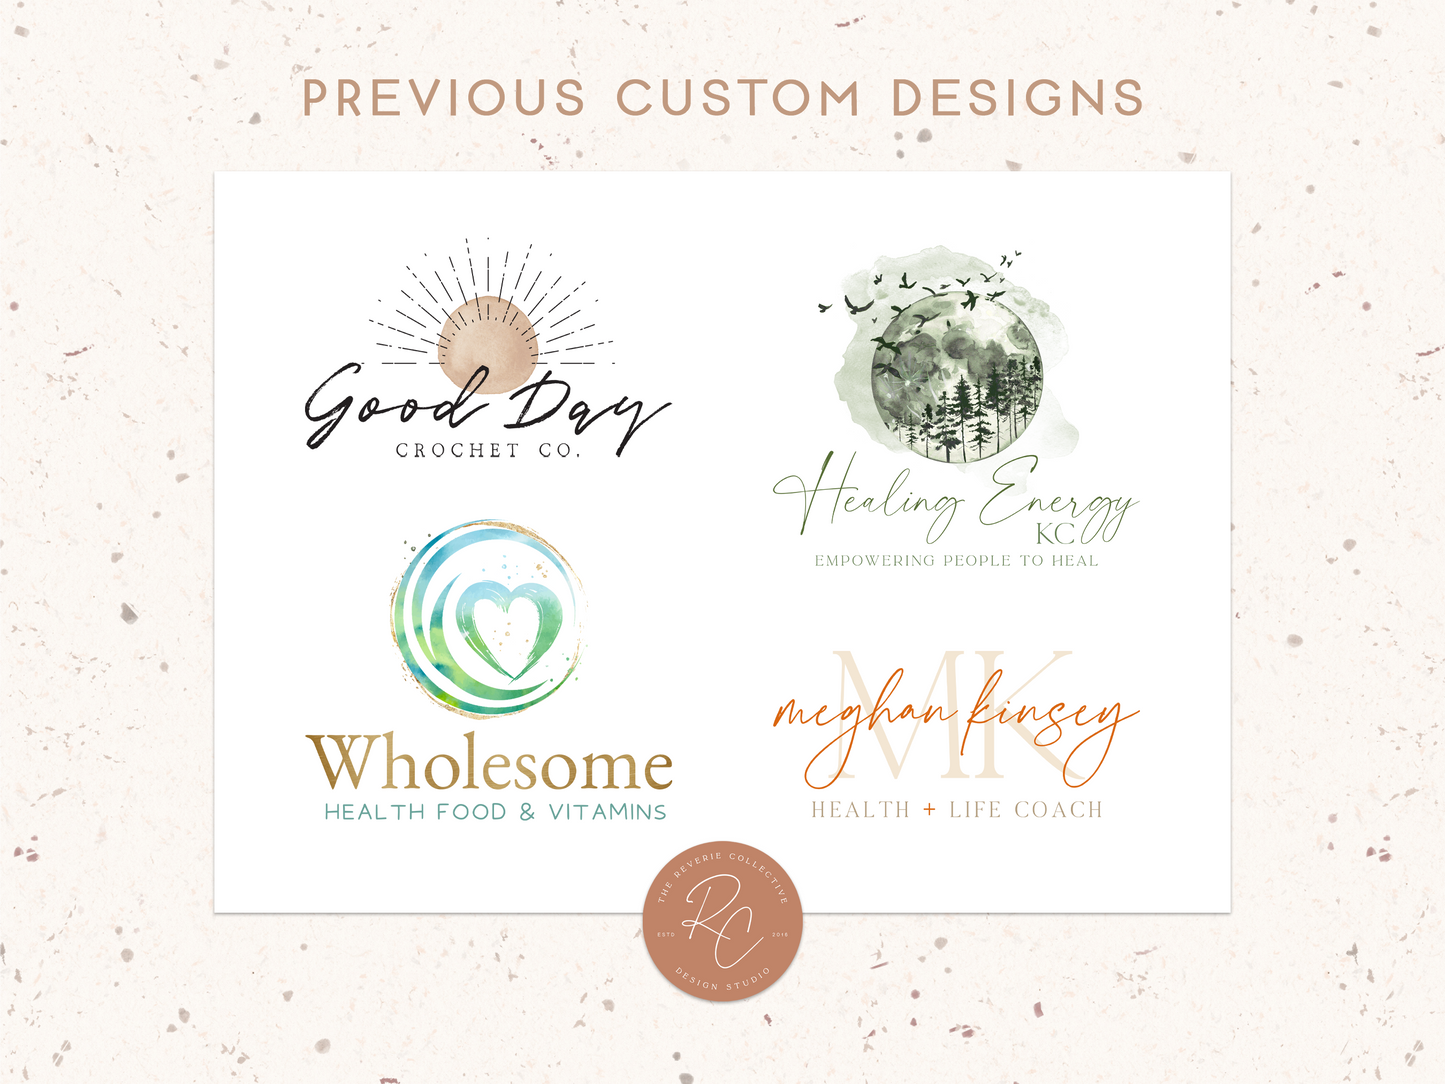 New Business Startup Package | Custom Logo Design